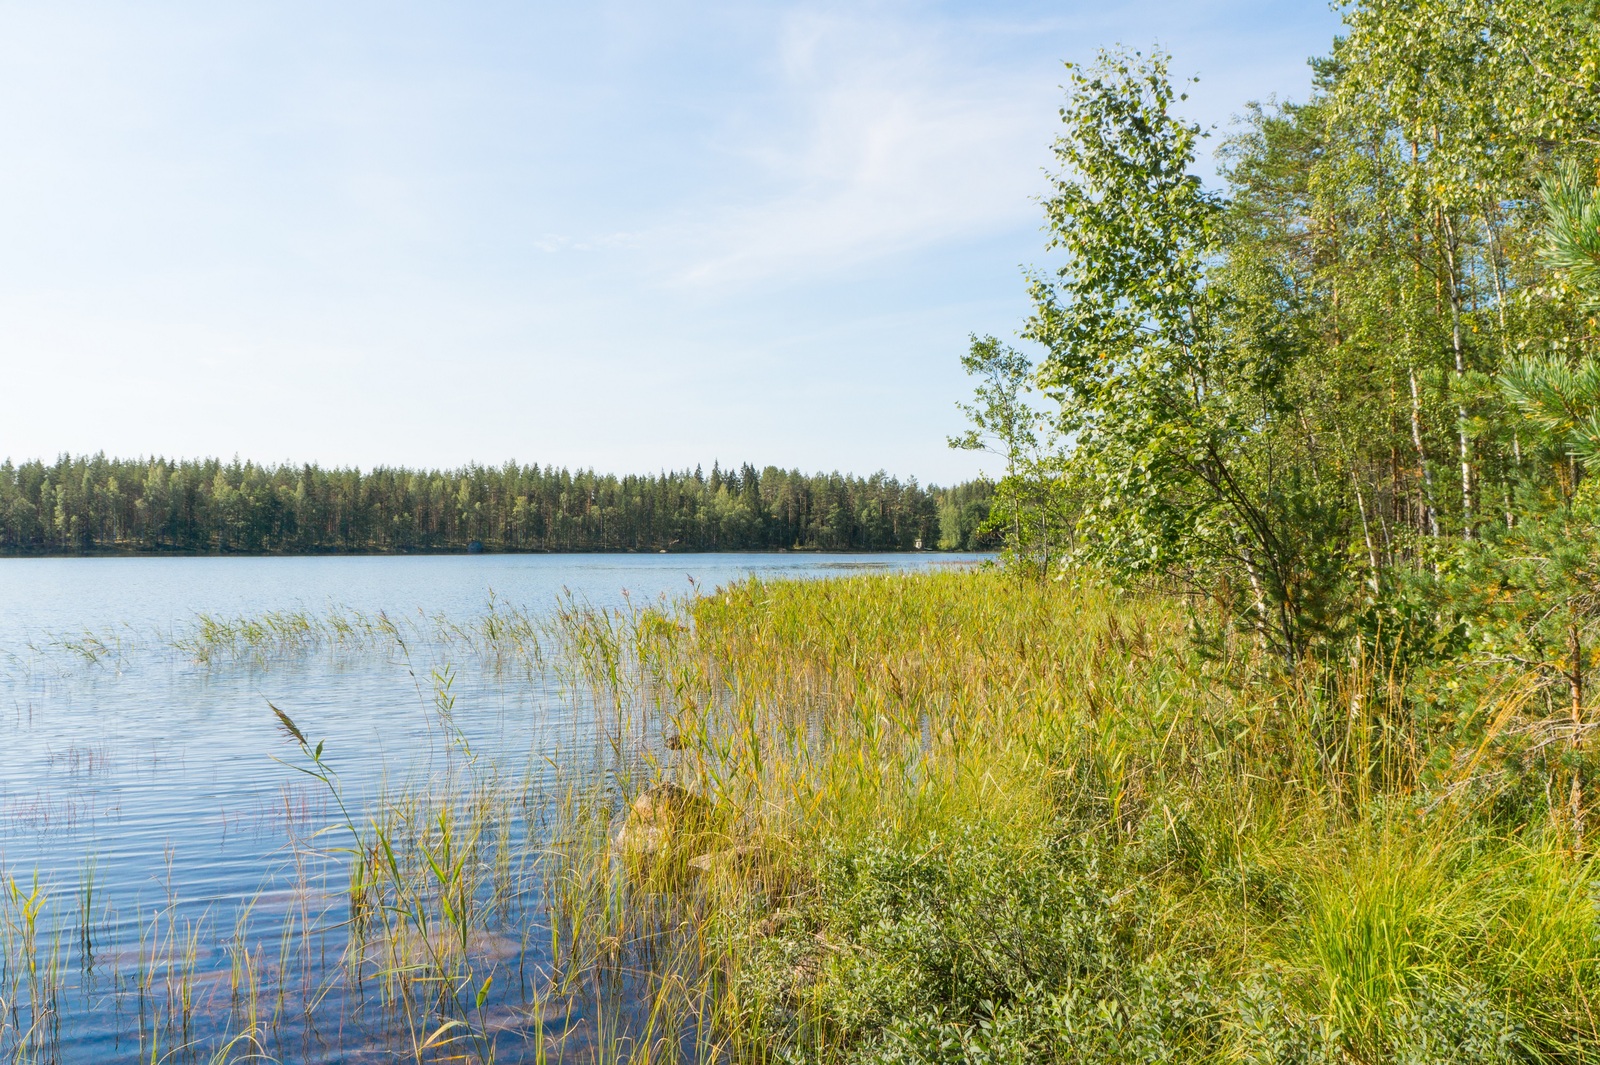 Kesäinen metsä reunustaa järveä. Rantavedessä on ruovikkoa ja kiviä.